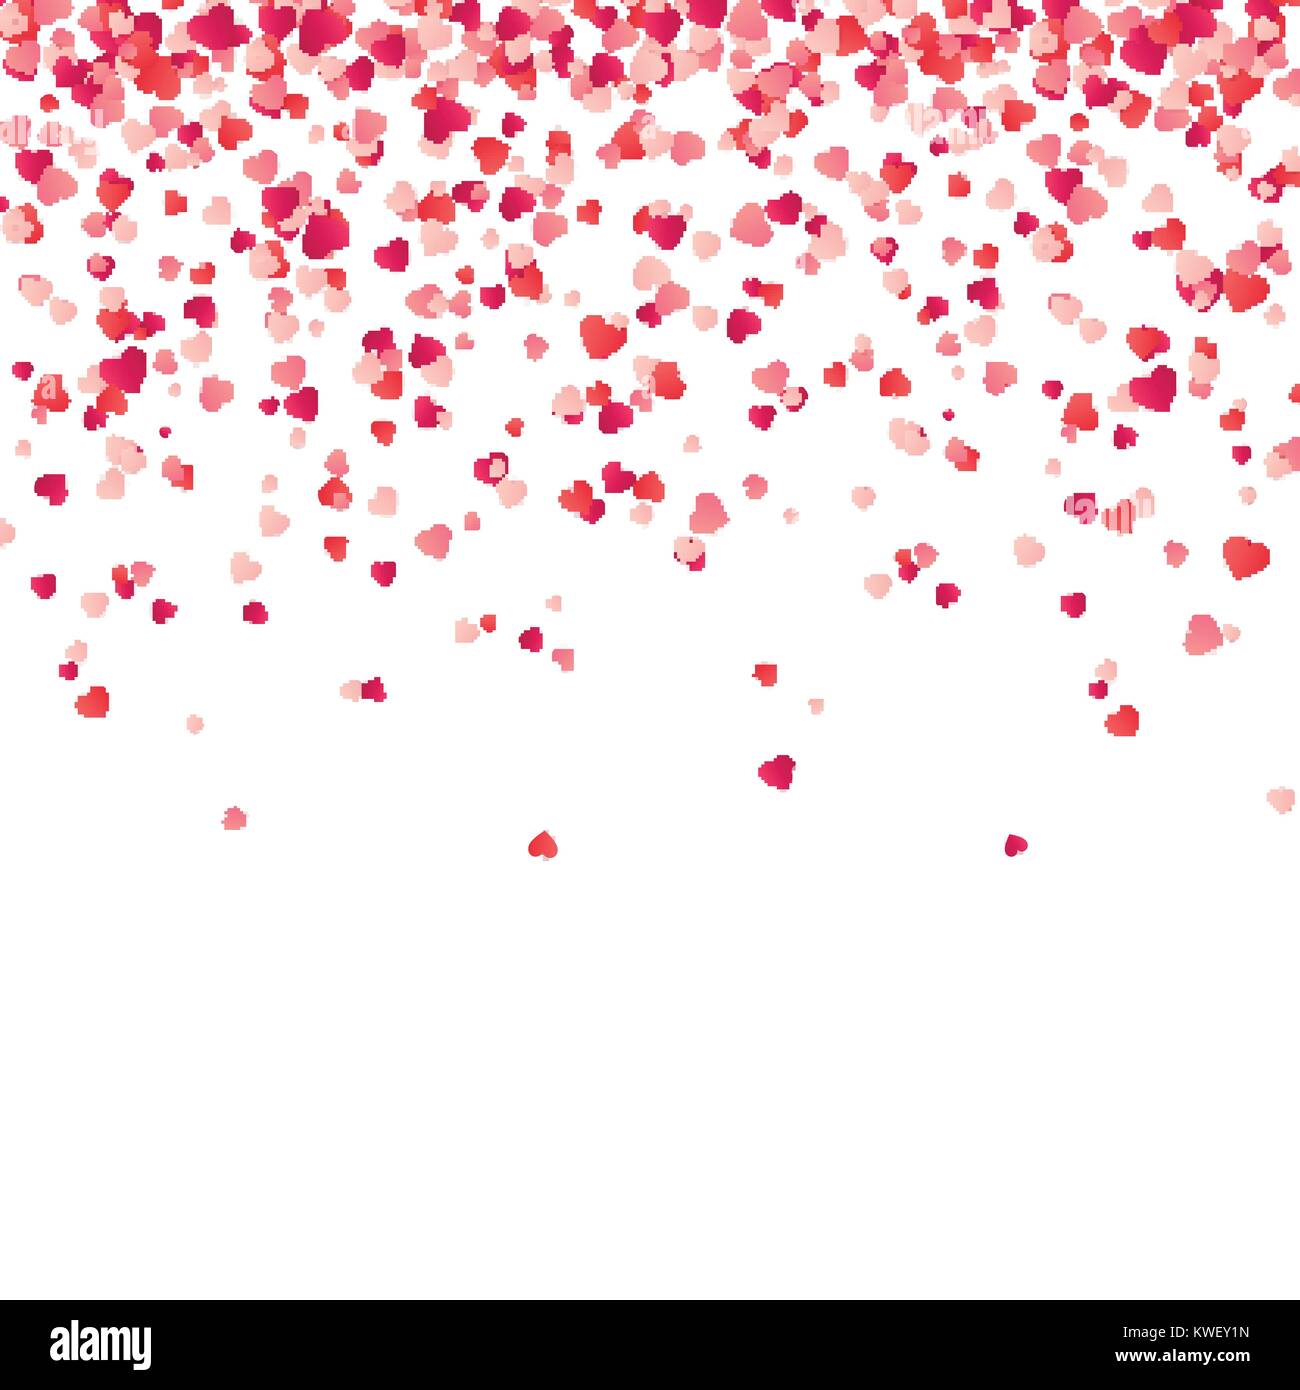 Herz Konfetti. Valentines, Frauen, Mütter Tag Hintergrund mit fallenden roten und rosa Papier Herzen, Blütenblätter. Gruß Hochzeit Karte. Februar 14, Liebe. weißen Hintergrund. Stock Vektor